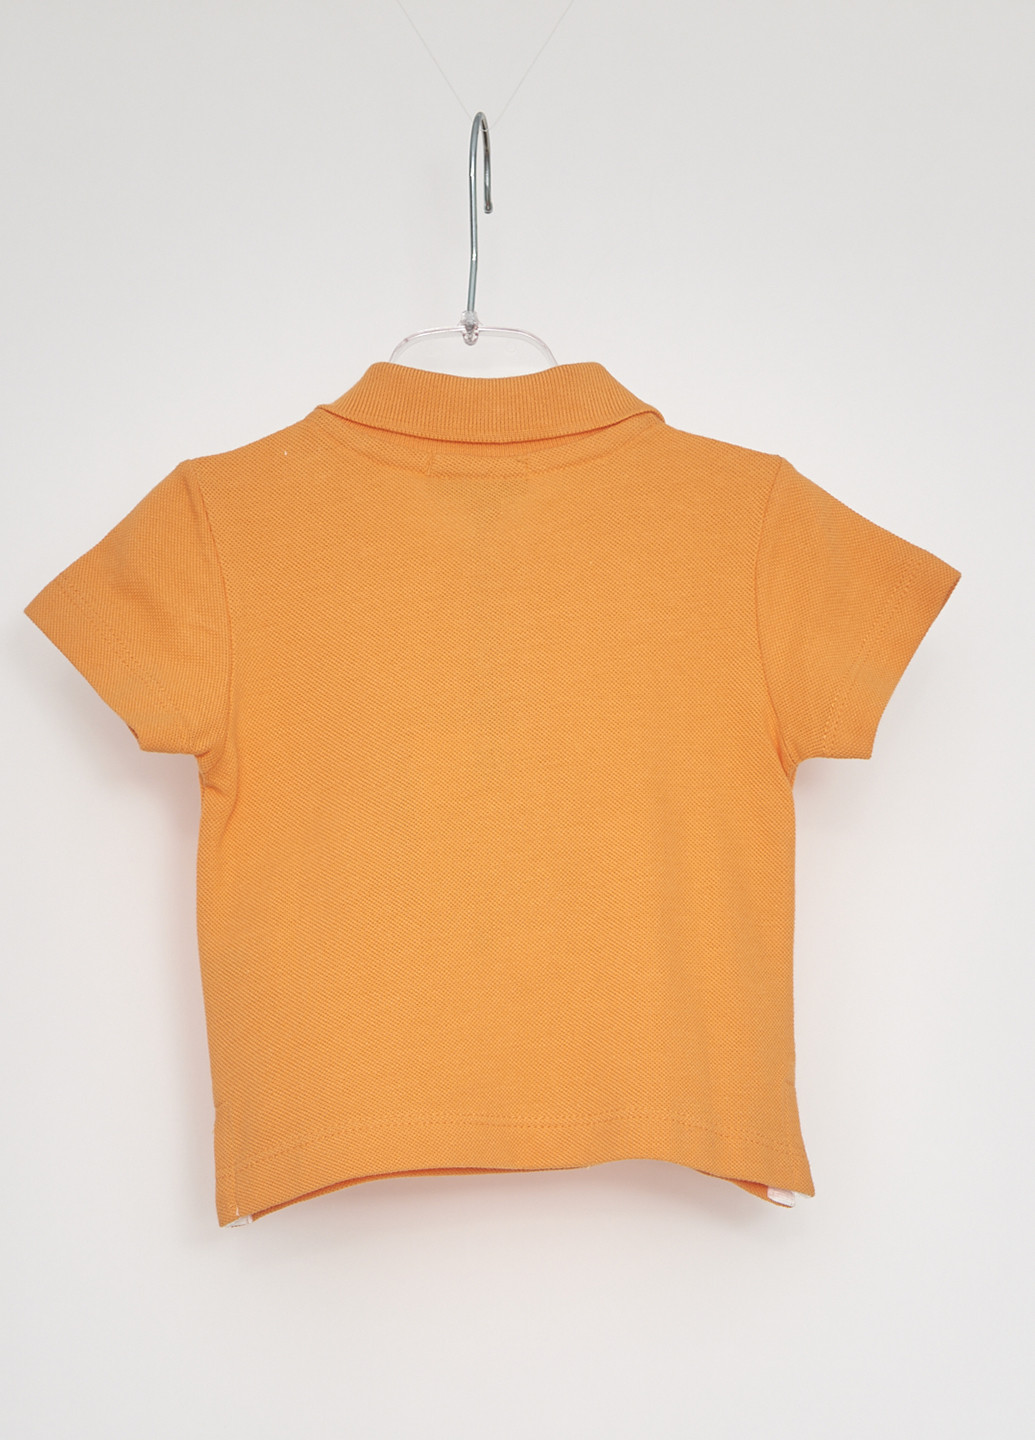 Оранжевая детская футболка-поло для мальчика Marasil с надписью